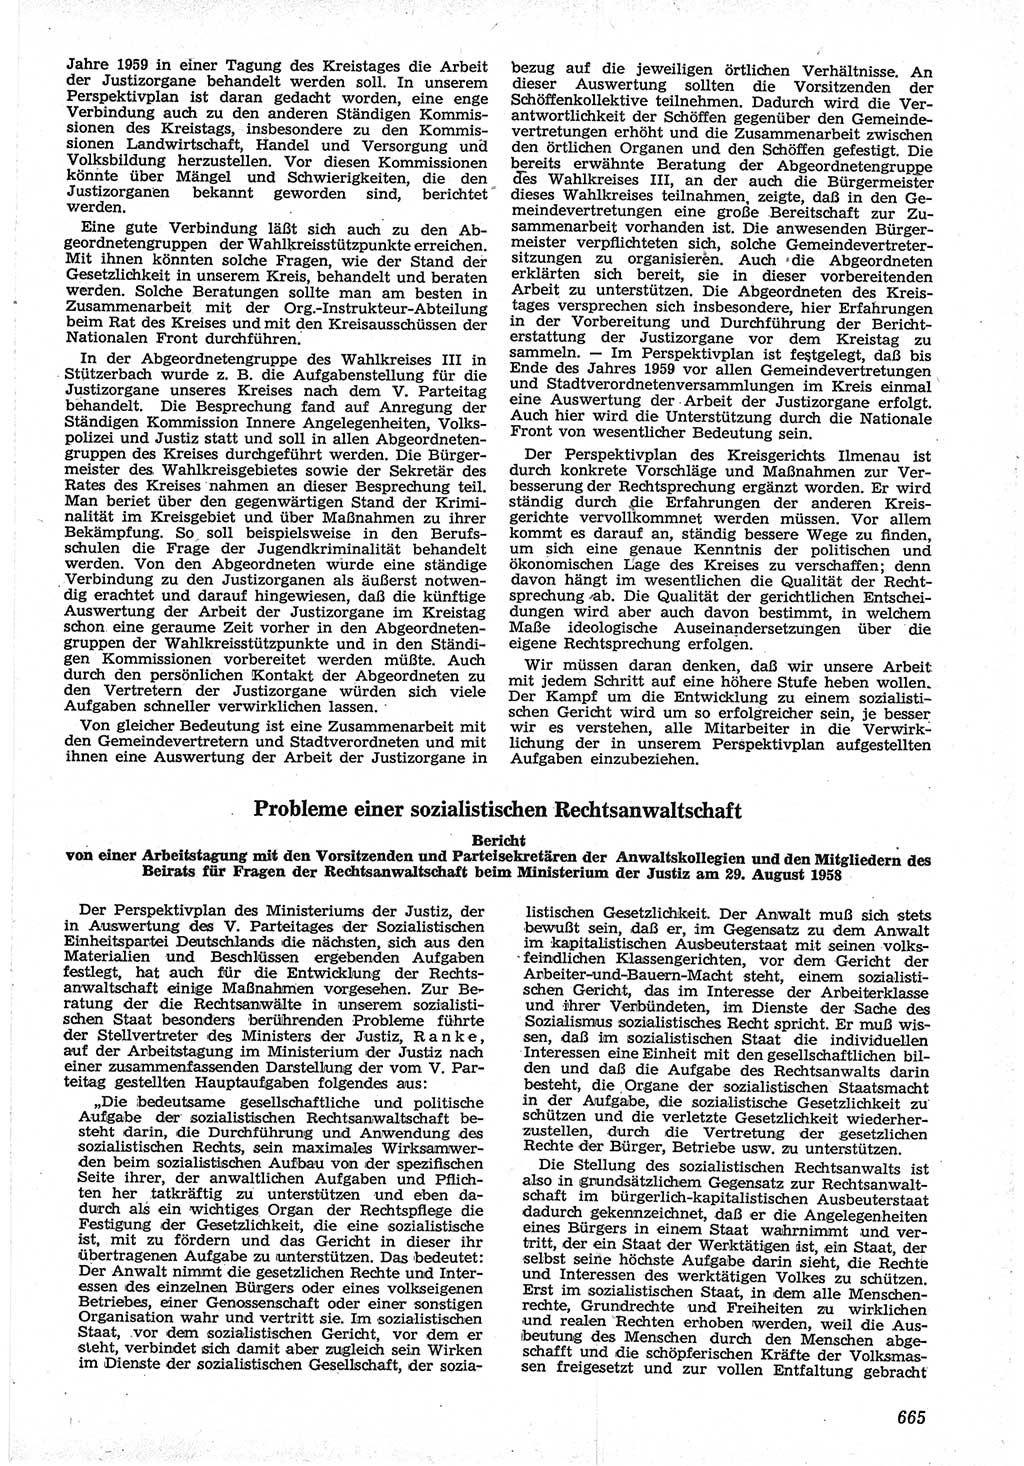 Neue Justiz (NJ), Zeitschrift für Recht und Rechtswissenschaft [Deutsche Demokratische Republik (DDR)], 12. Jahrgang 1958, Seite 665 (NJ DDR 1958, S. 665)